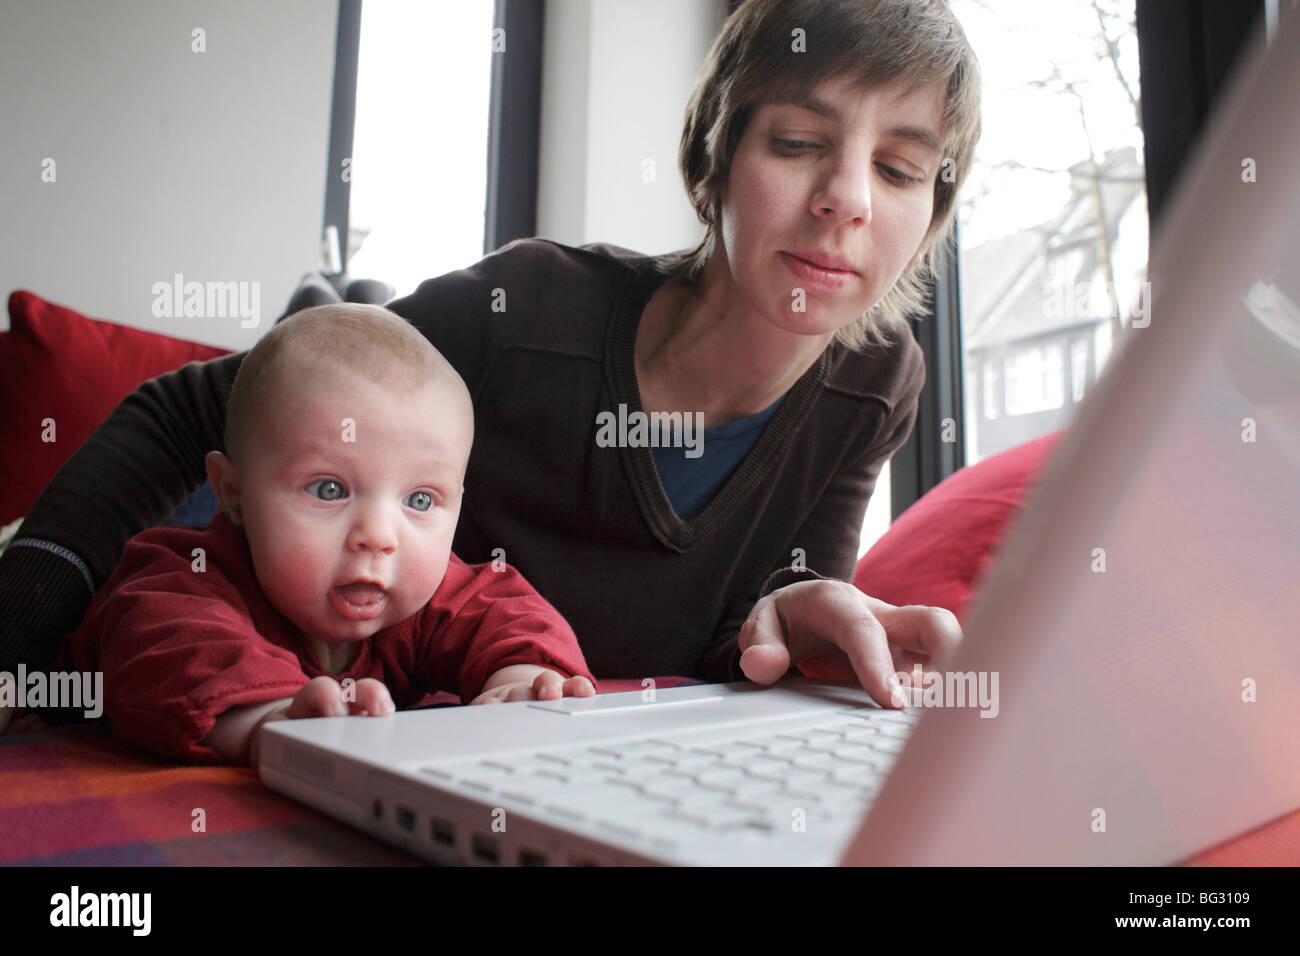 La madre y el niño trabaja en un portátil. Foto de stock